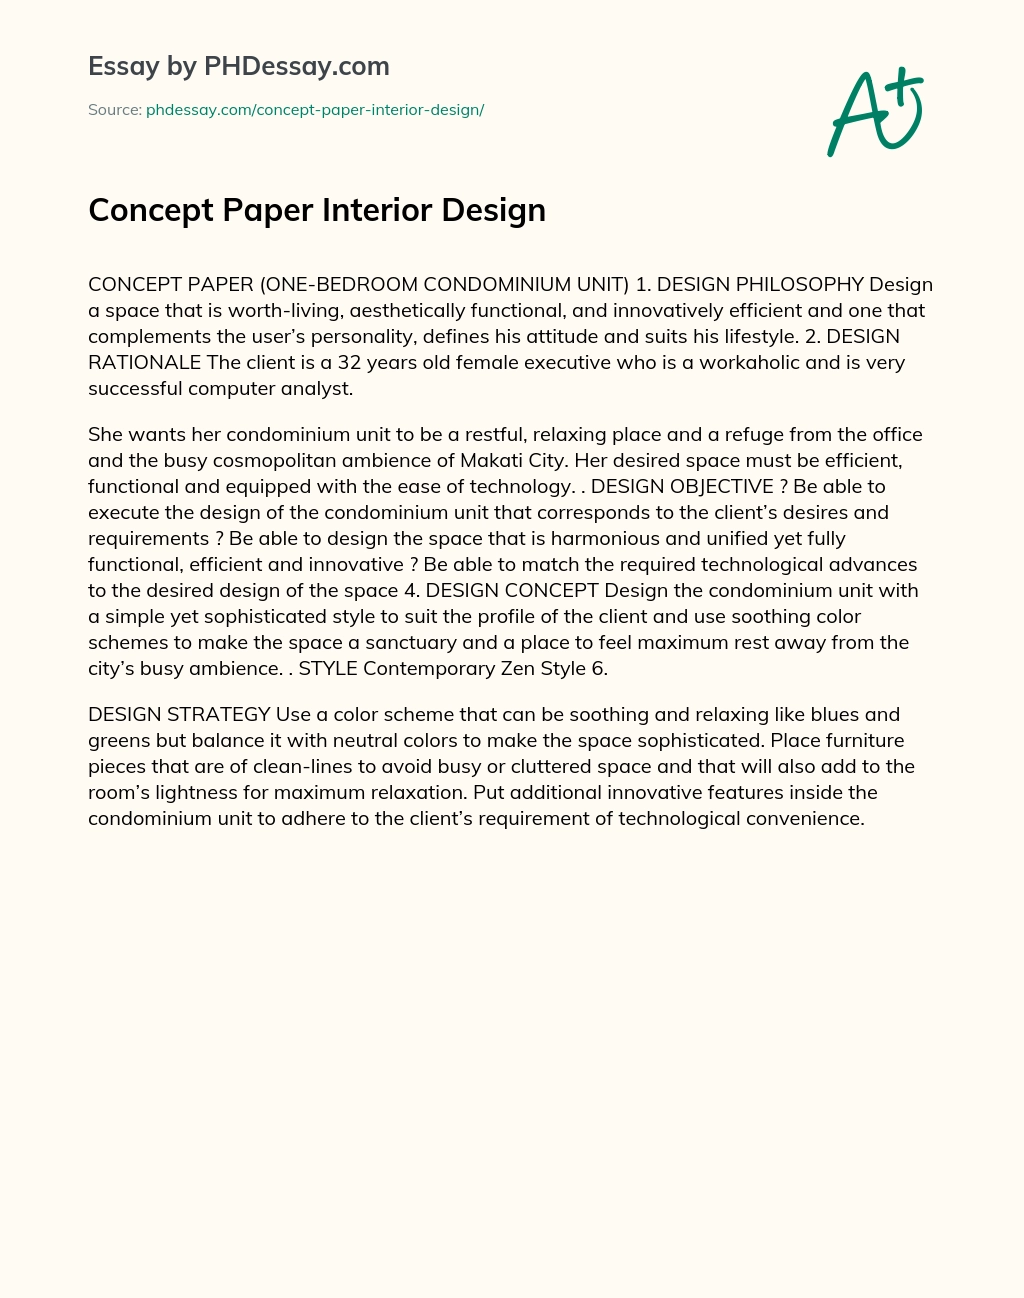 Concept Paper Interior Design essay